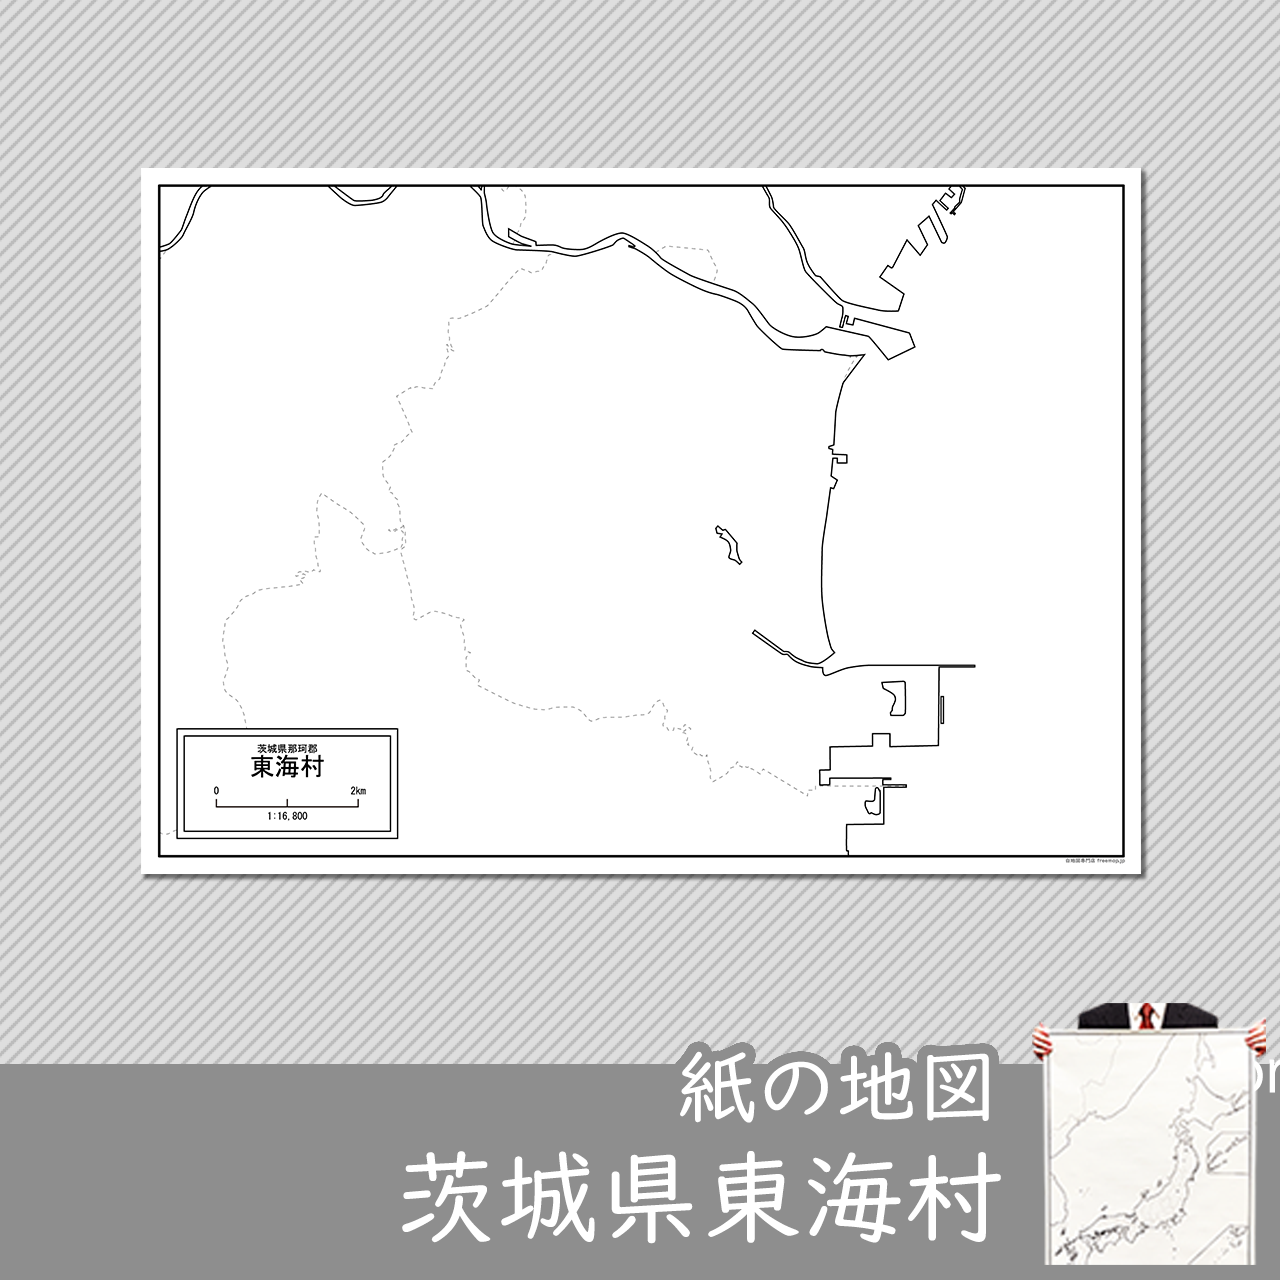 東海村の紙の白地図のサムネイル